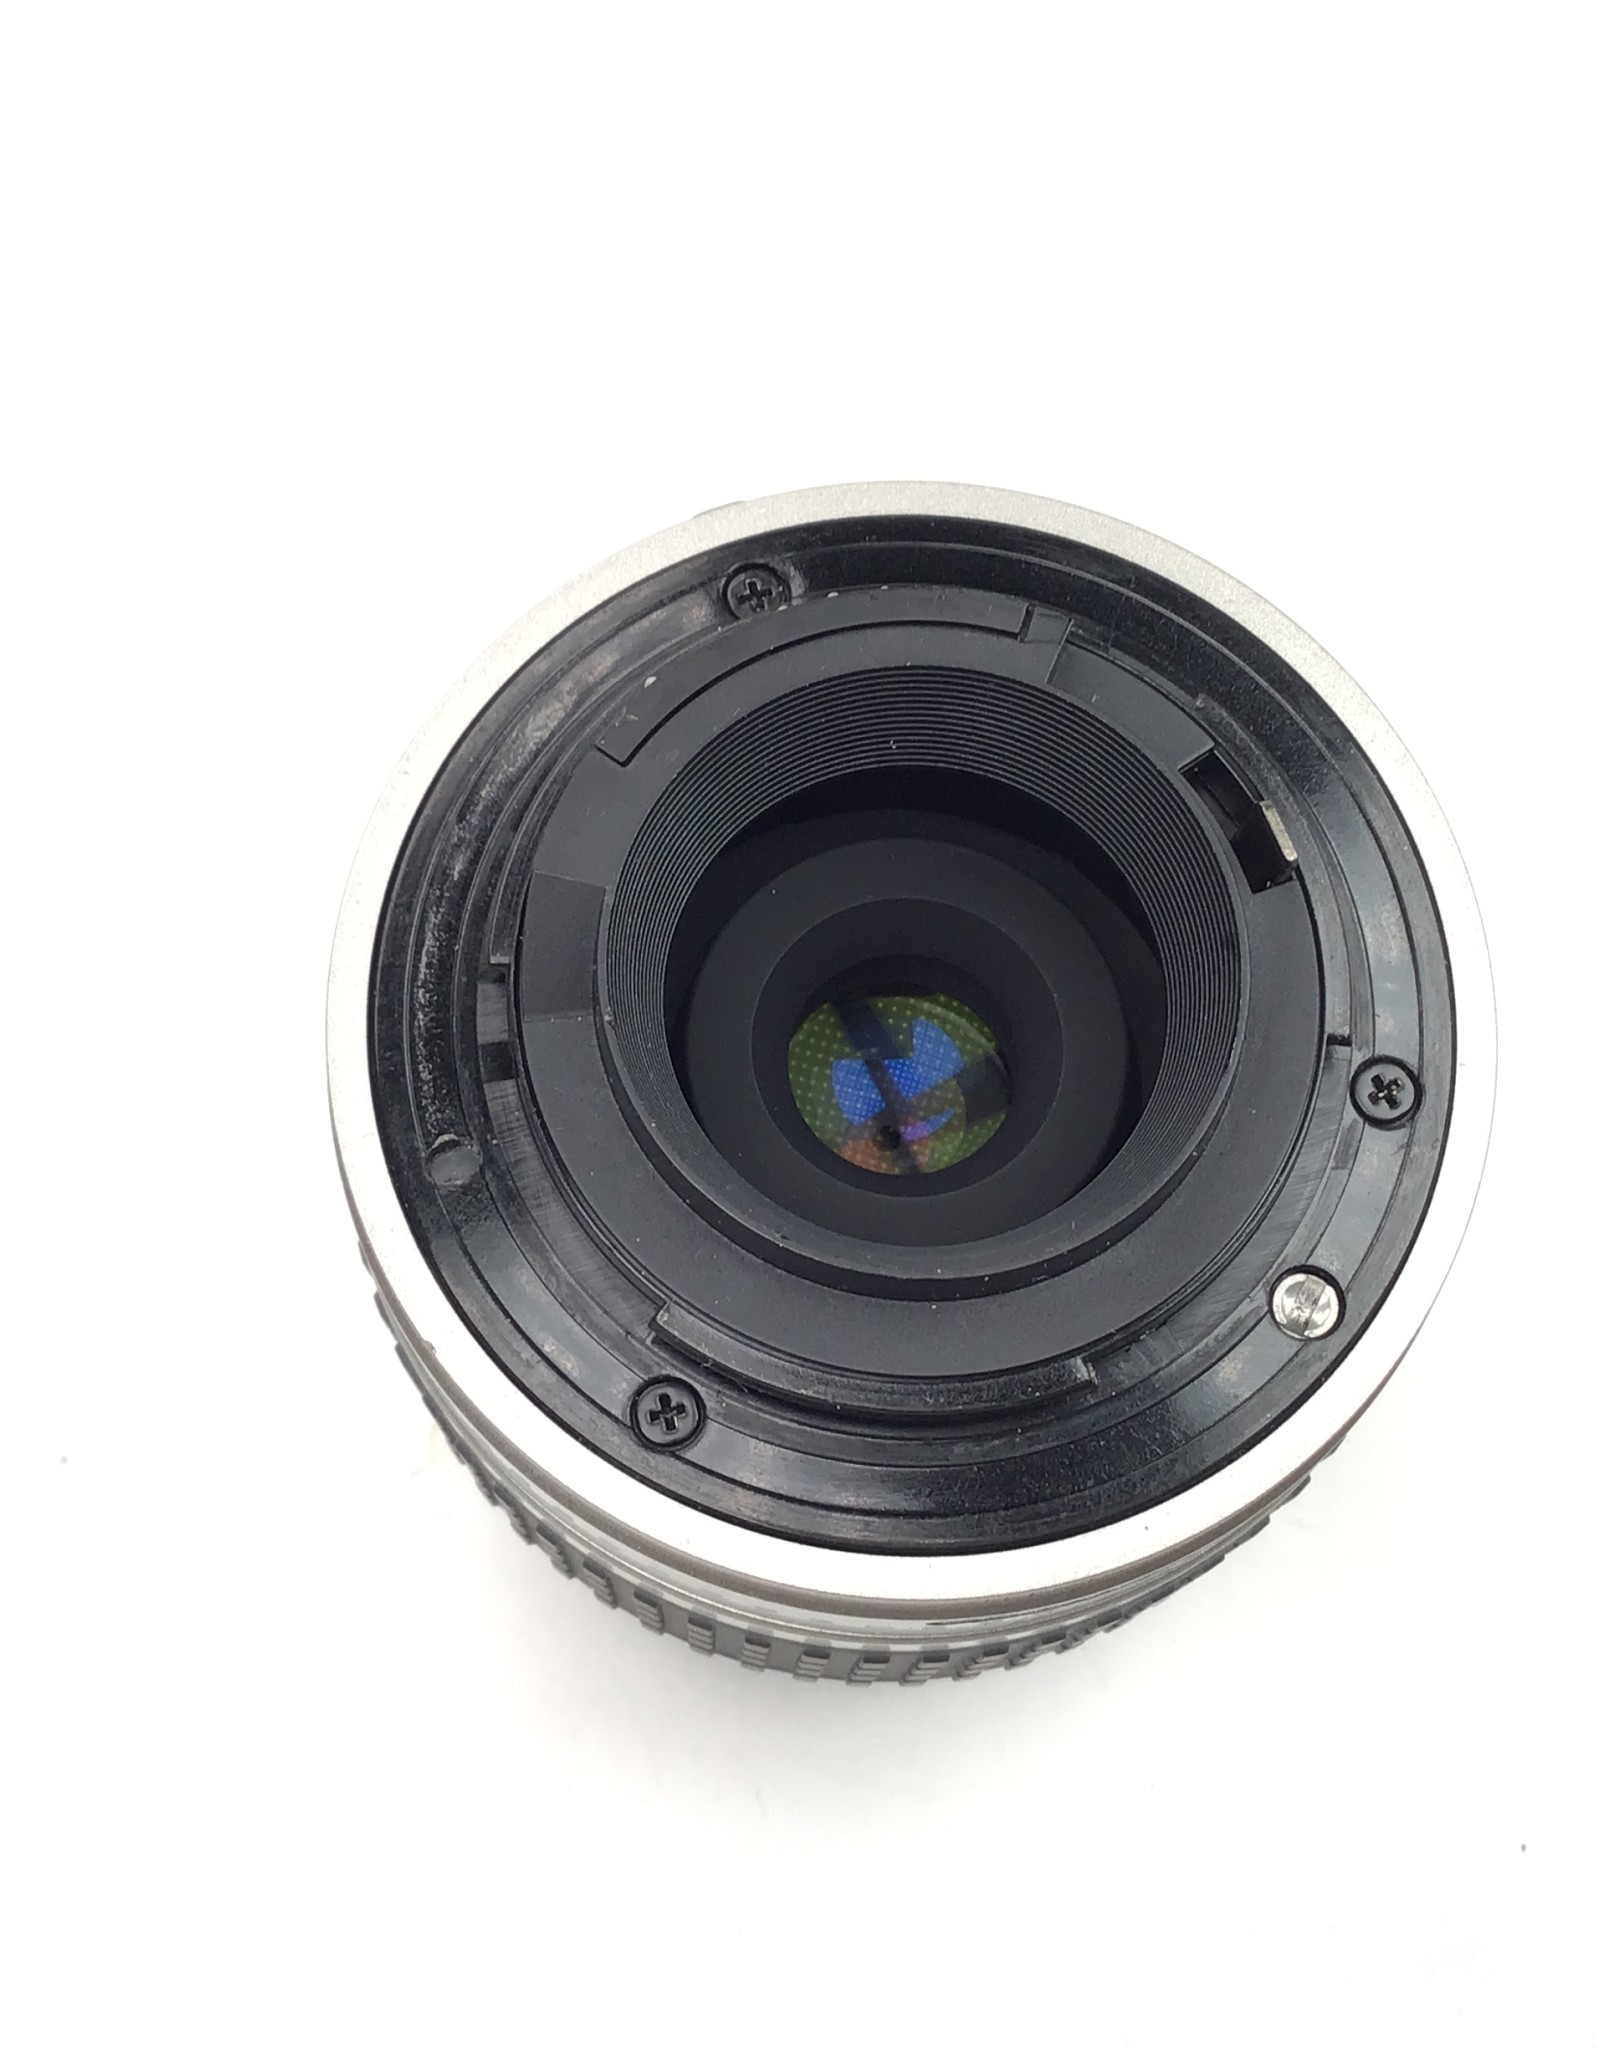 NIKON Nikon AF Nikkor 28-80mm f3.3-5.6G Lens Used Good